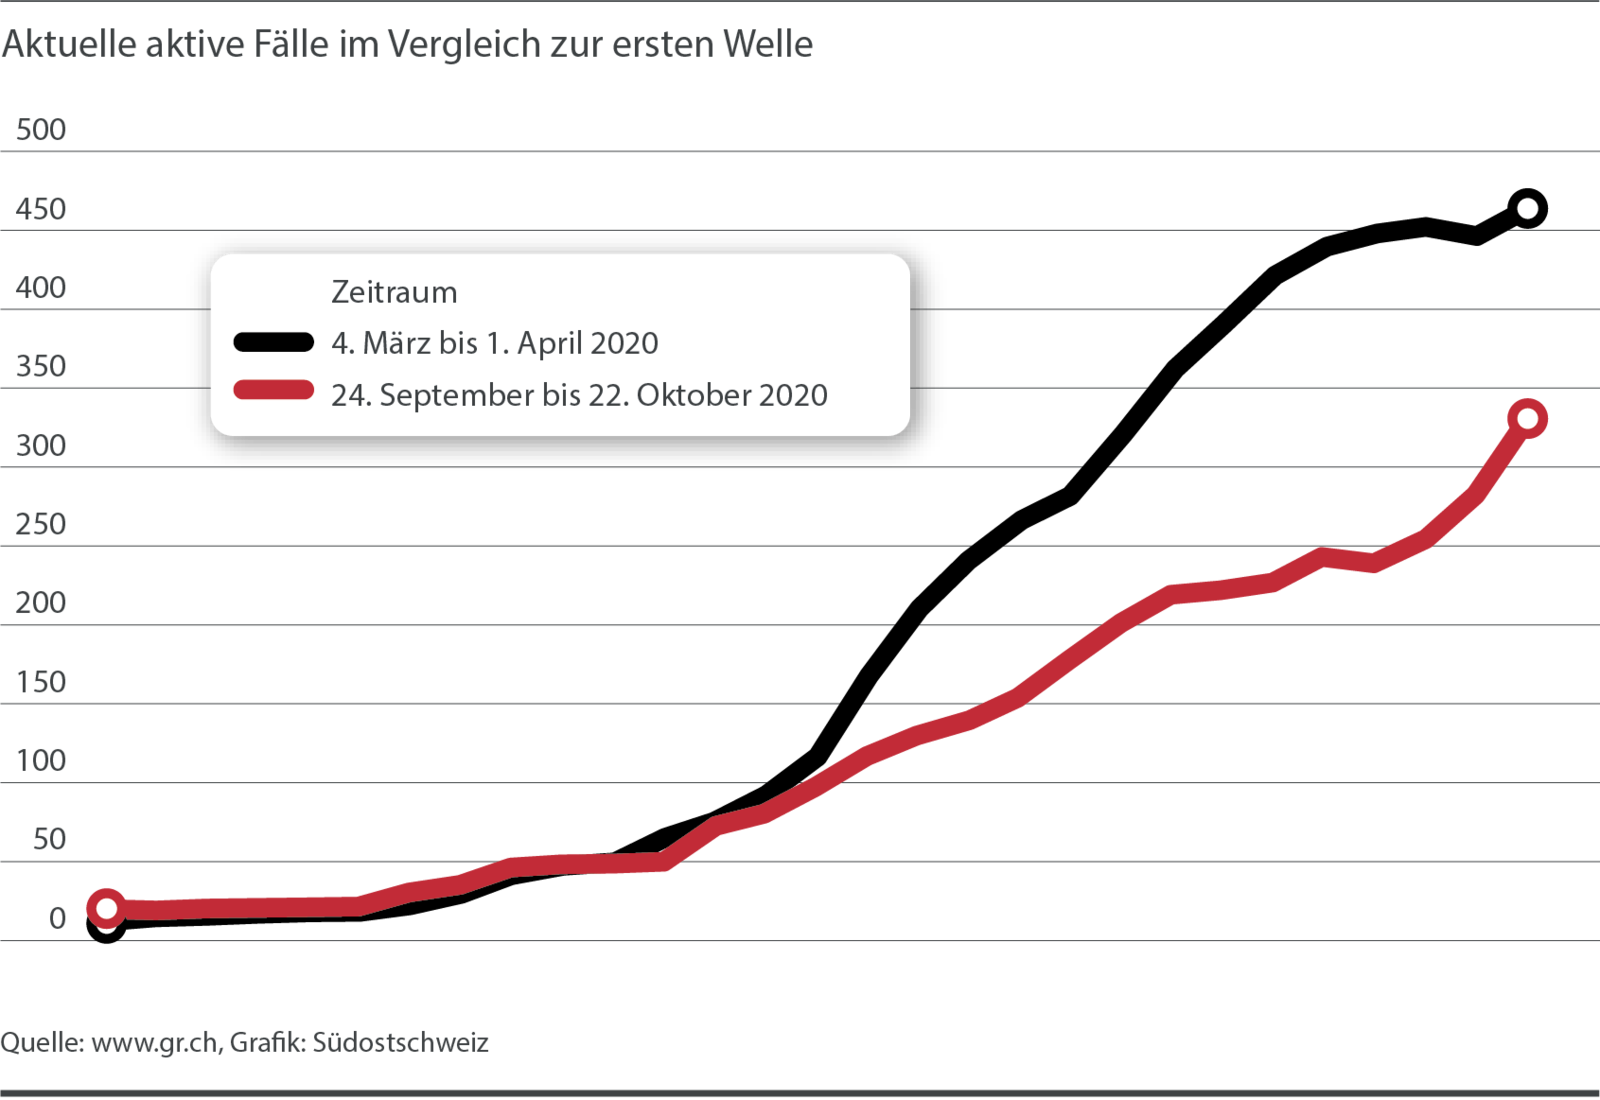 Aktuelle aktive Fälle im Vergleich zur ersten Welle. Quelle: www.gr.ch, Grafik: Südostschweiz